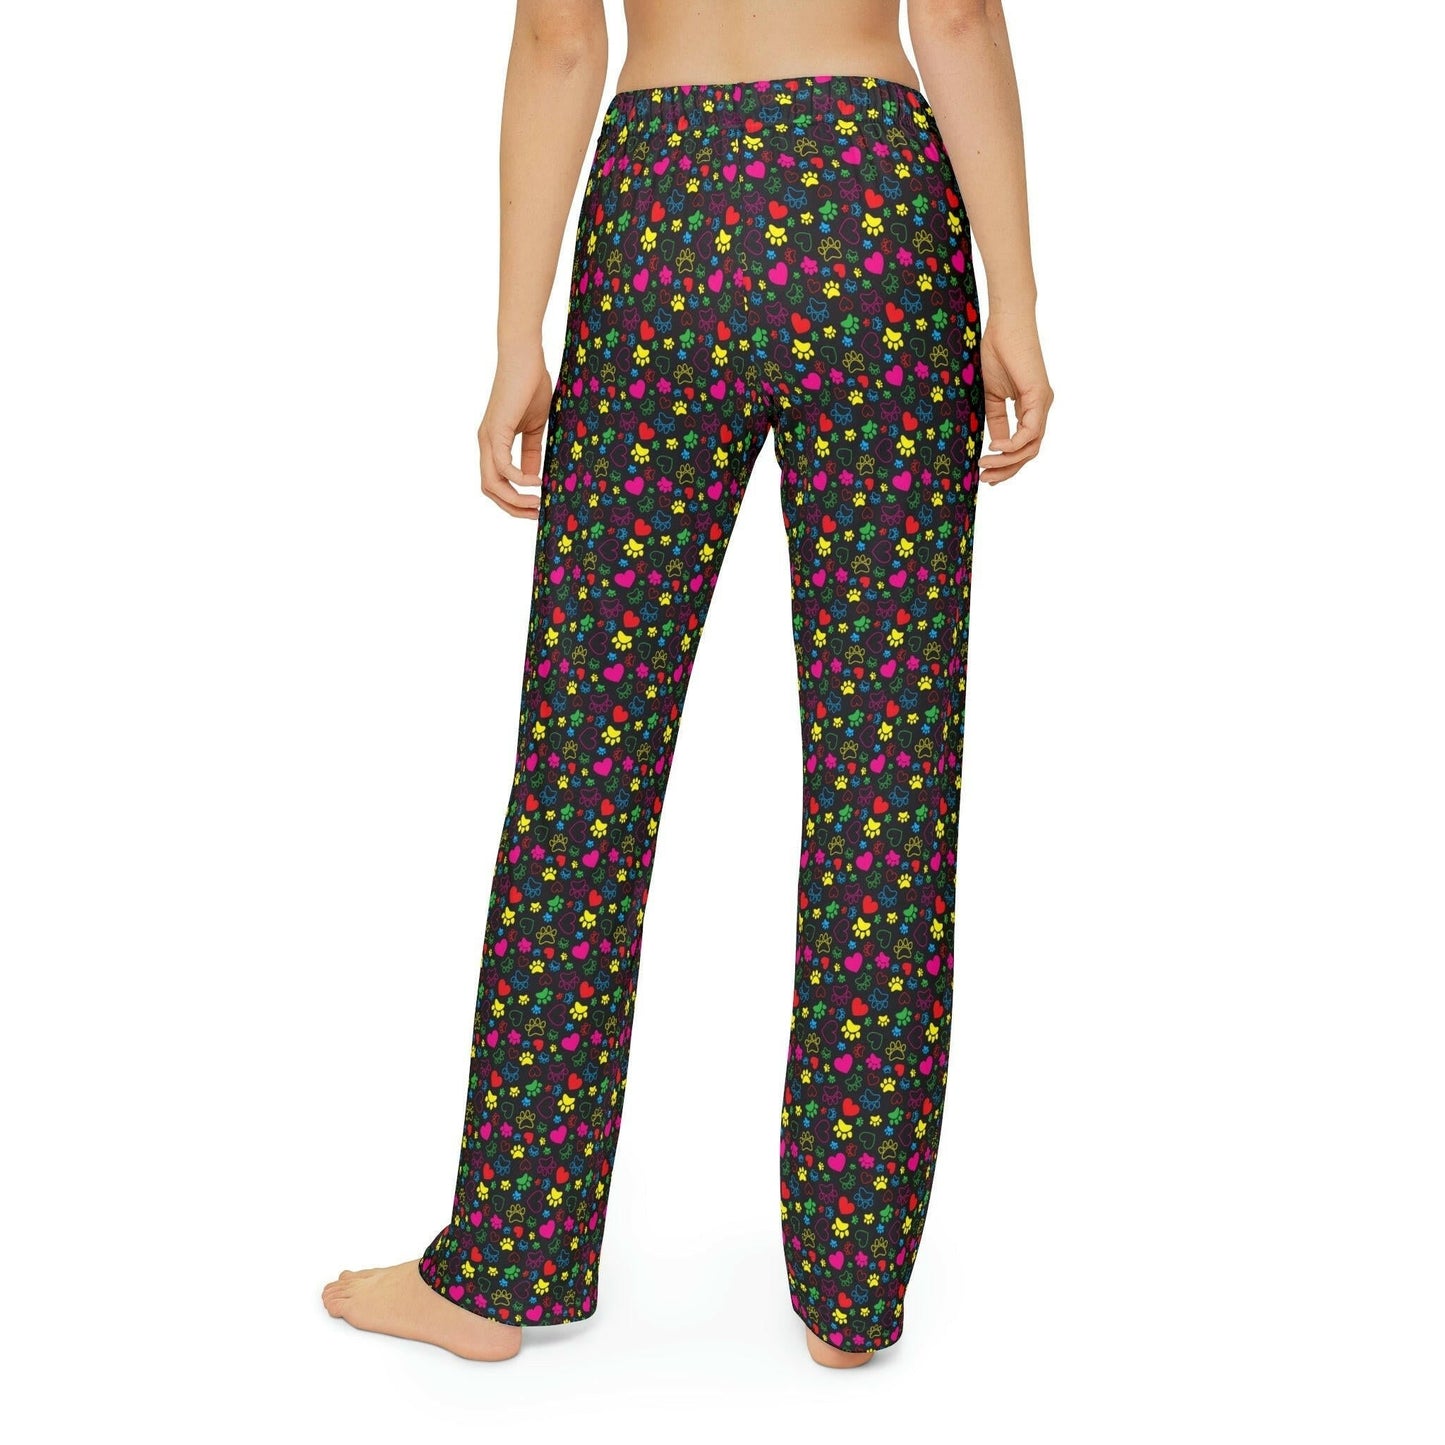 Kolorful Paws Kids Pajama Pants - All Over Prints - Epileptic Al’s Shop